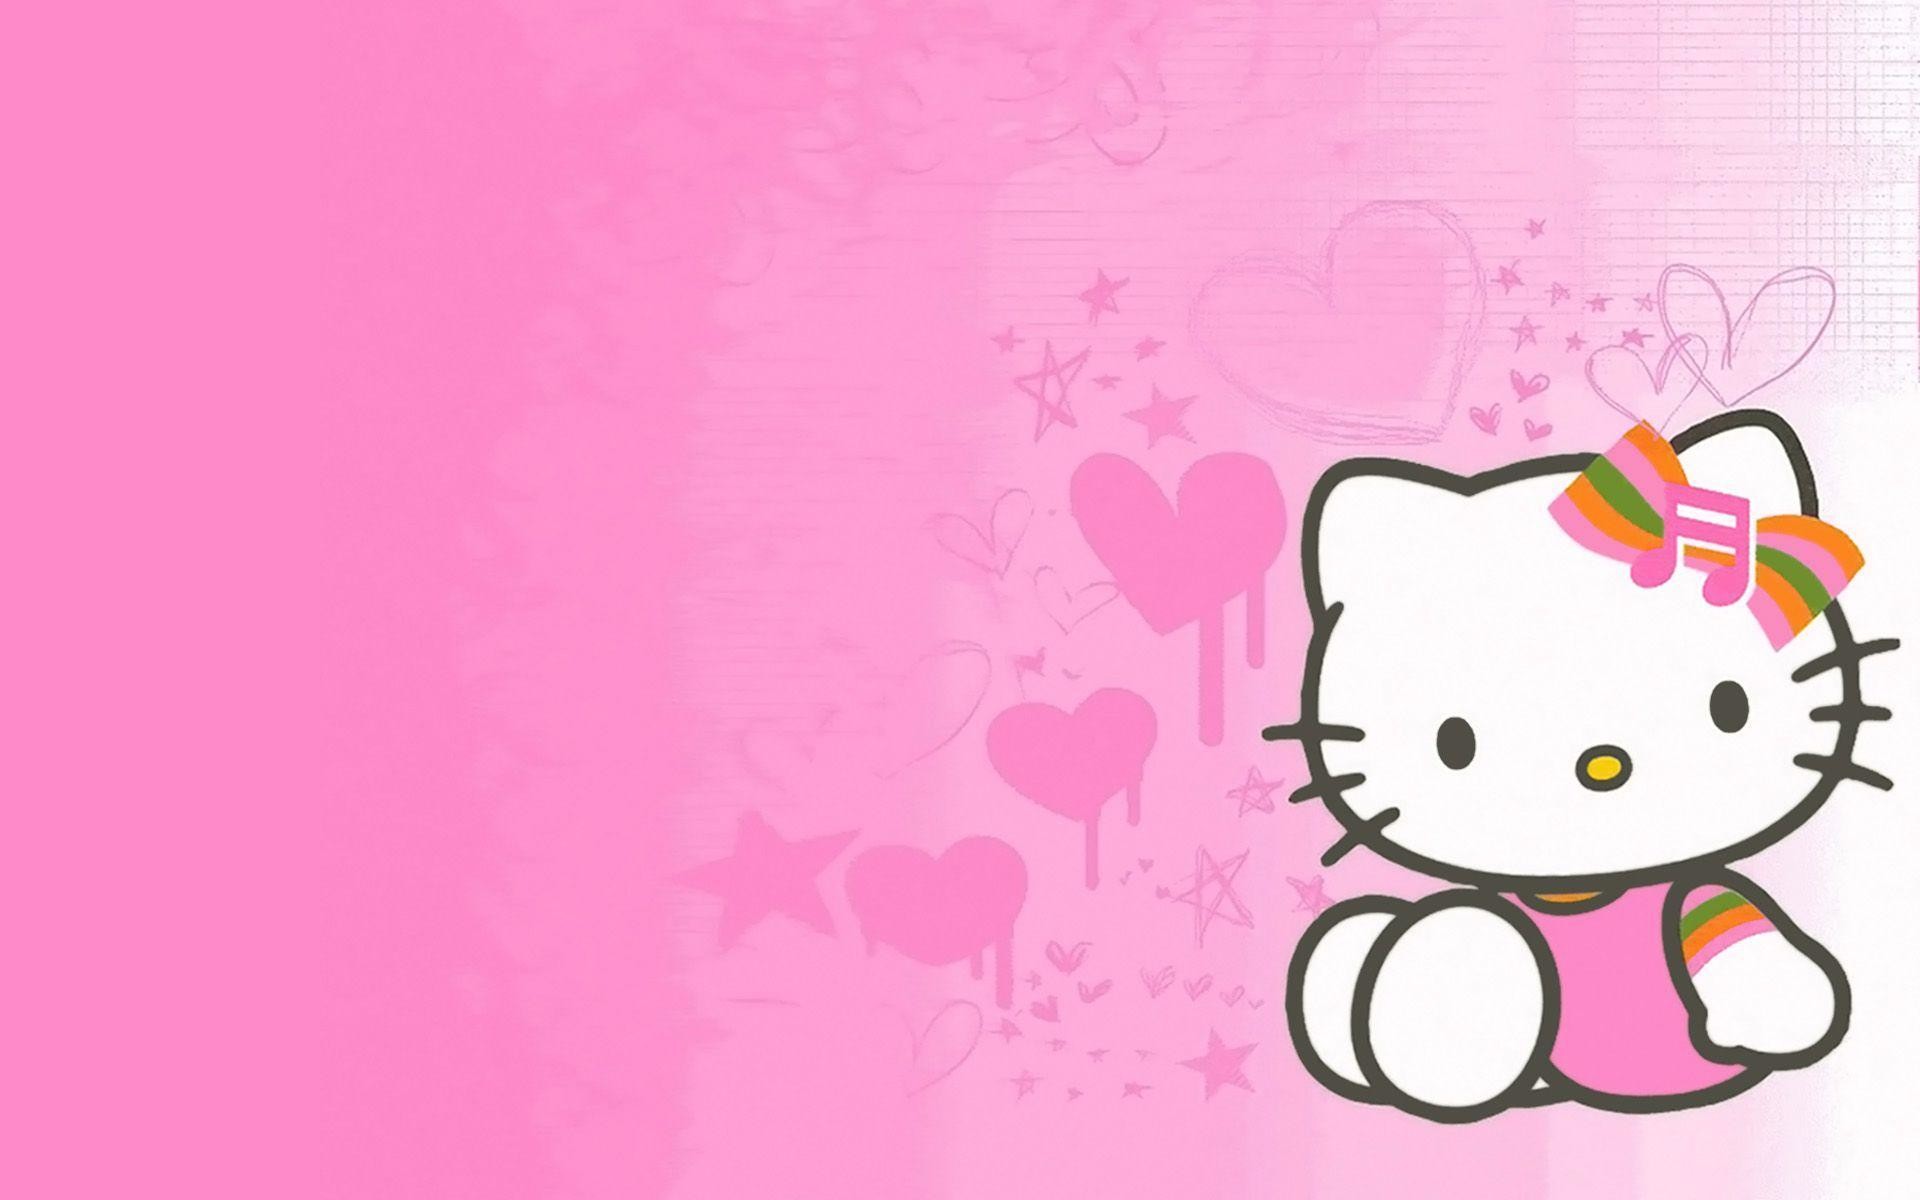 Hello Kitty đã trở thành biểu tượng văn hóa của Nhật Bản và được yêu mến trên toàn thế giới. Nếu bạn là fan của Hello Kitty, bạn không thể bỏ qua bức ảnh này. Hình ảnh Hello Kitty được sắp xếp tinh tế và đáng yêu, sẽ khiến bạn cảm thấy thư giãn và hạnh phúc.